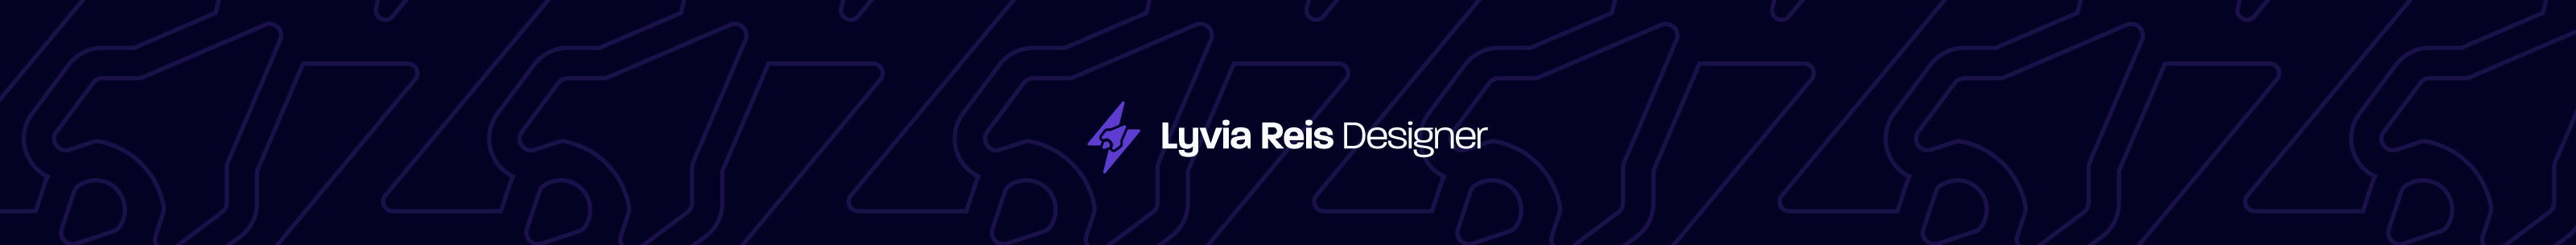 Lyvia Reis Designer's profile banner